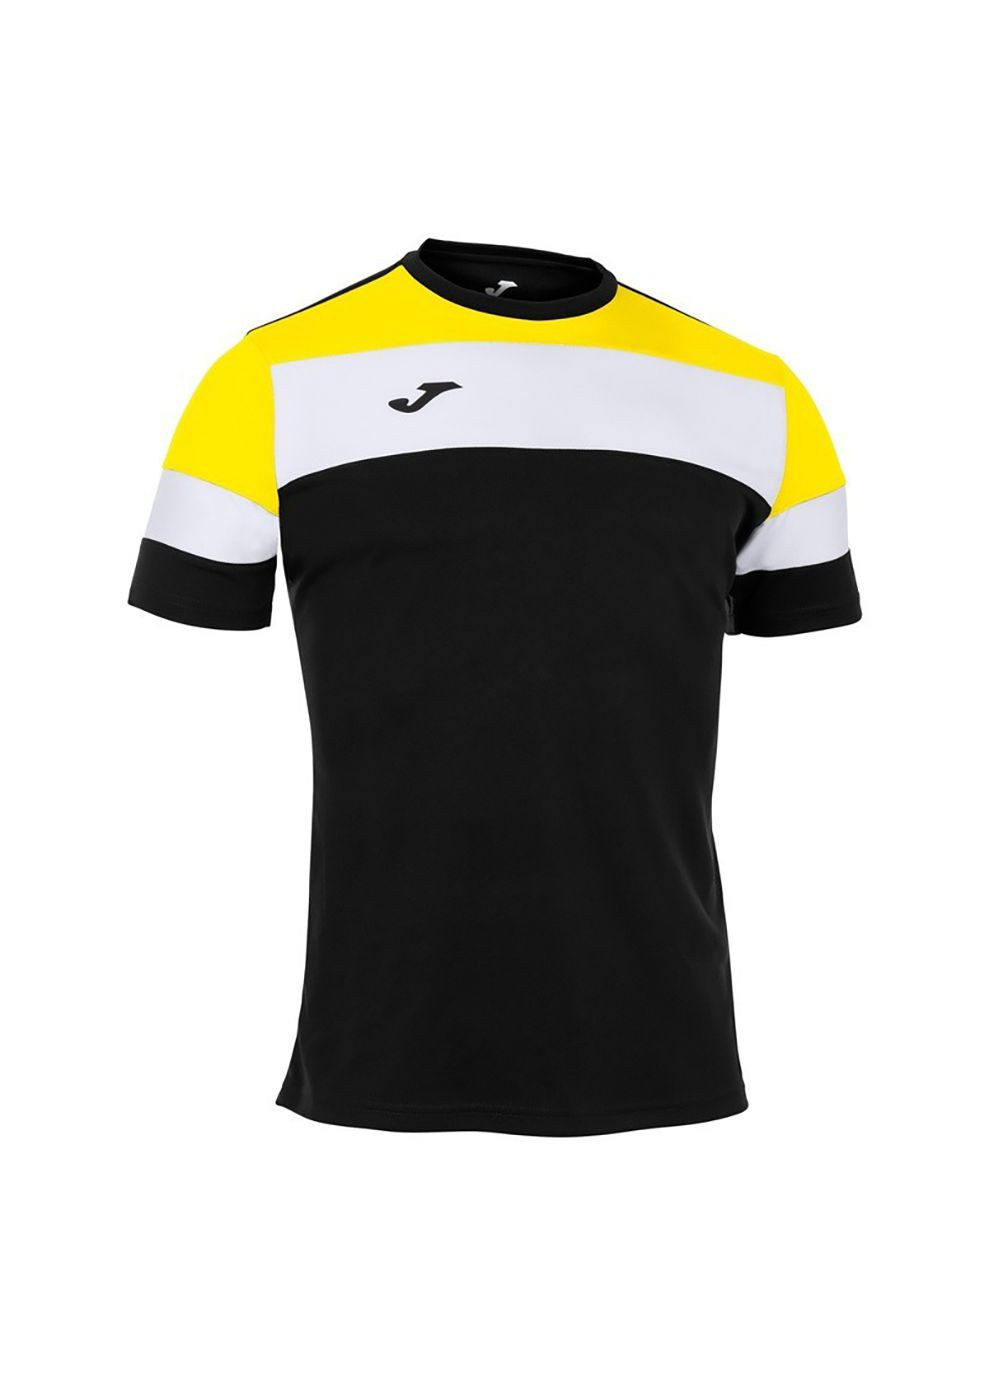 Комбинированная футболка crew iv t-shirt black-yellow s/s черный,желтый 101534.109 Joma